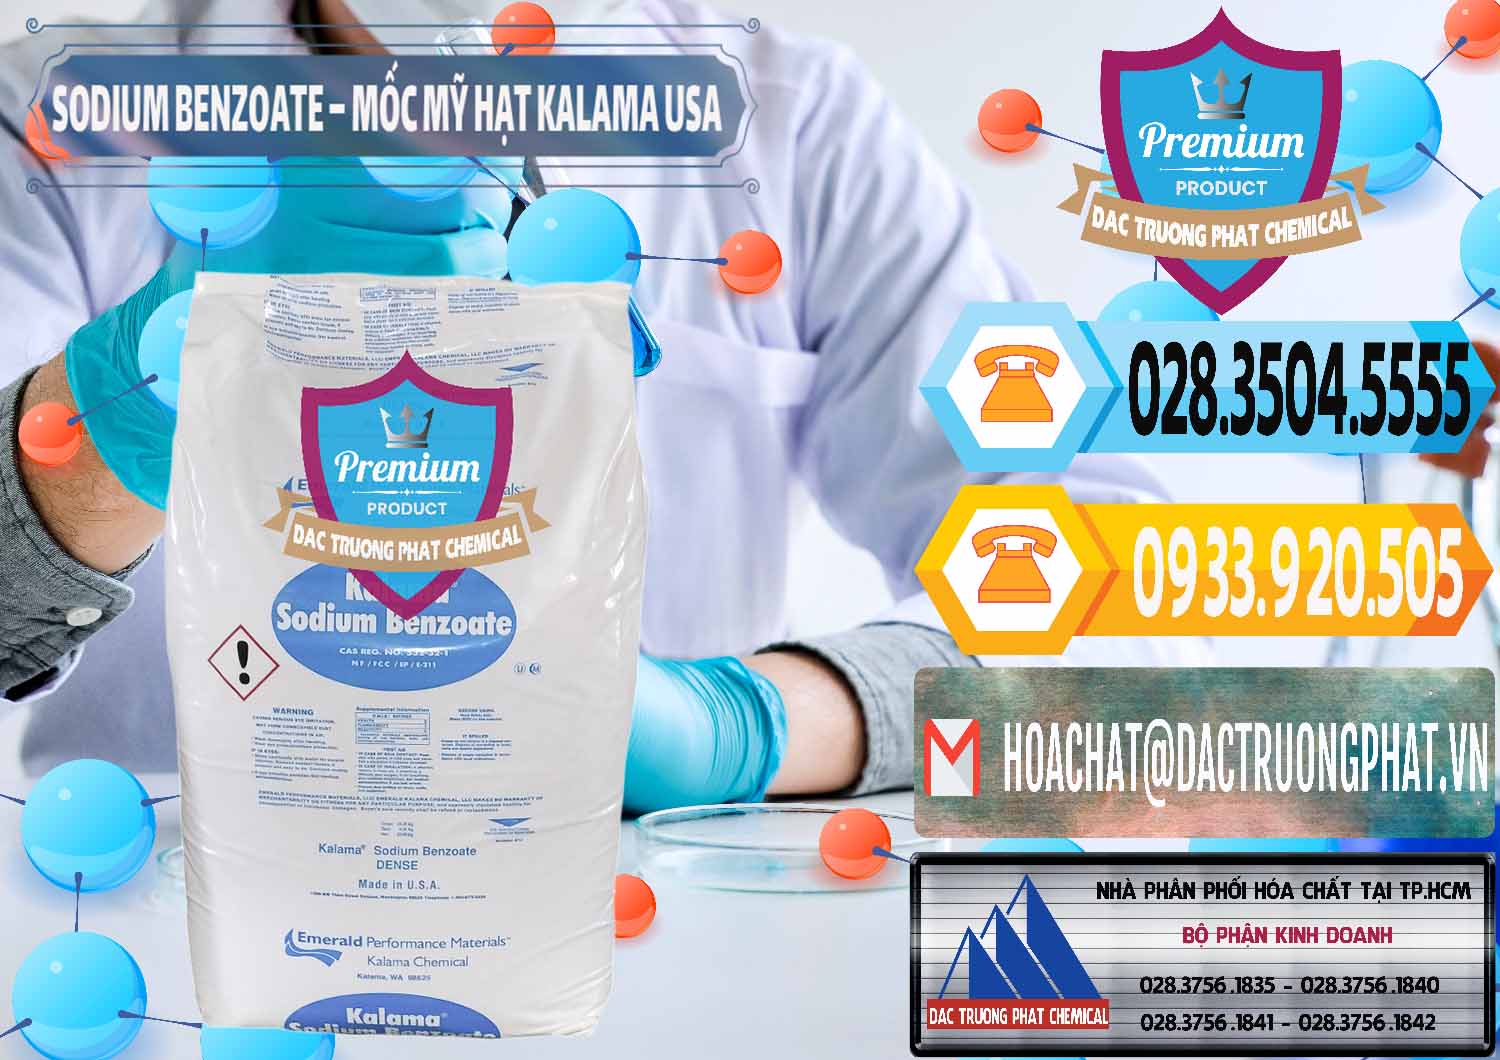 Nơi cung cấp & bán Sodium Benzoate - Mốc Hạt Kalama Food Grade Mỹ Usa - 0137 - Chuyên cung cấp ( kinh doanh ) hóa chất tại TP.HCM - hoachattayrua.net